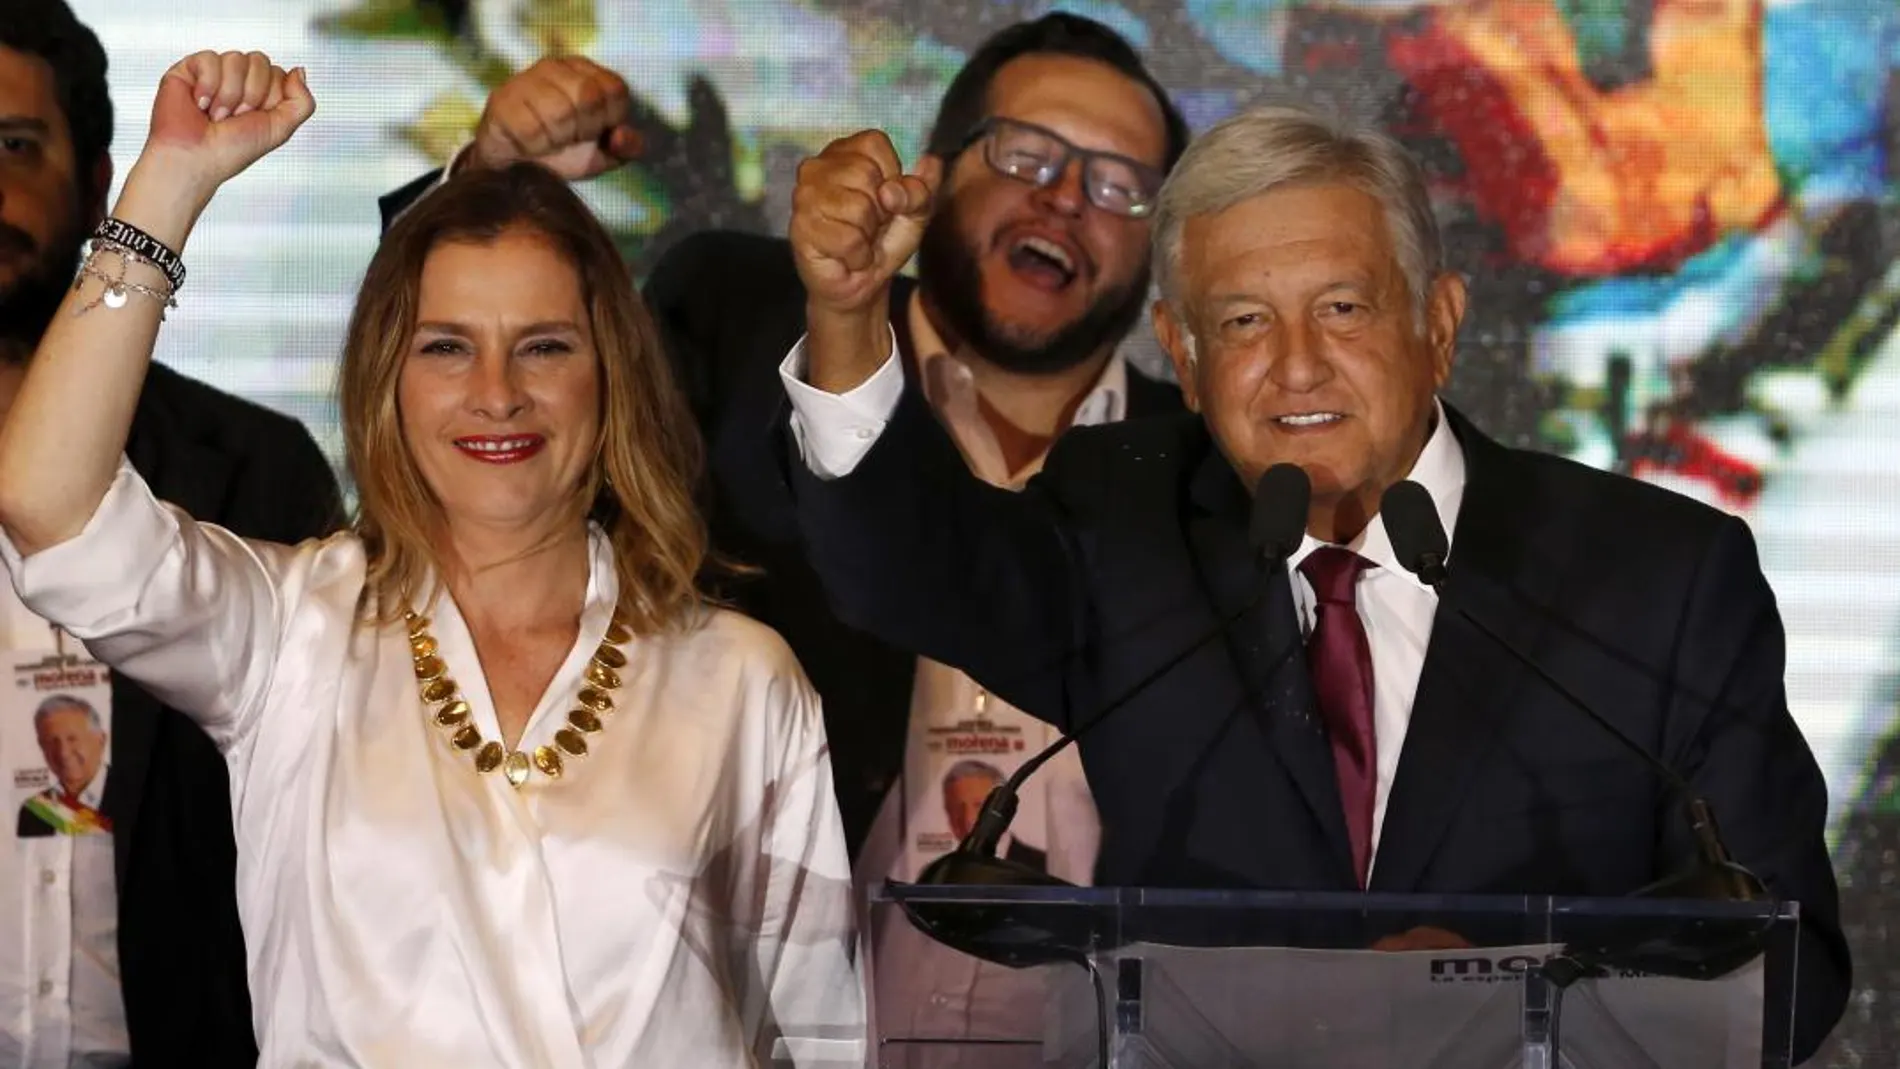 Andrés Manuel López Obrador, junto a su mujer Beatriz Gutiérrez Muller, ofrece un discurso a sus seguidores en el Hotel Hilton Hilton tras conocer su victoria / Ap